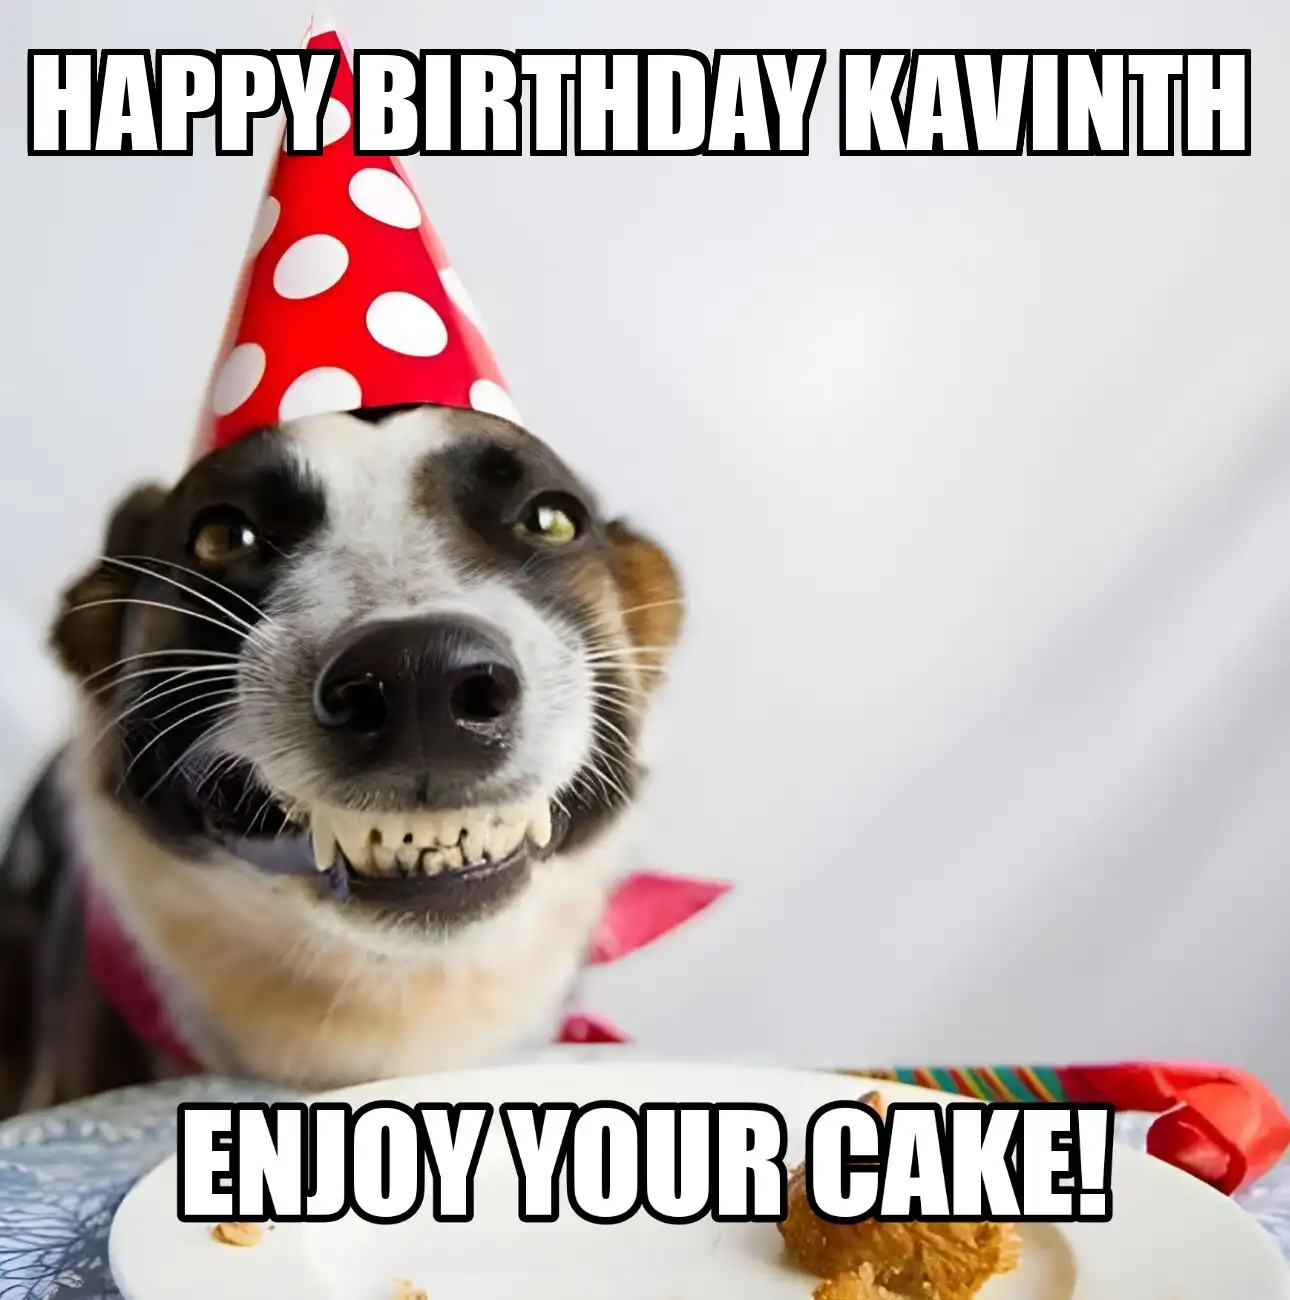 Happy Birthday Kavinth Enjoy Your Cake Dog Meme